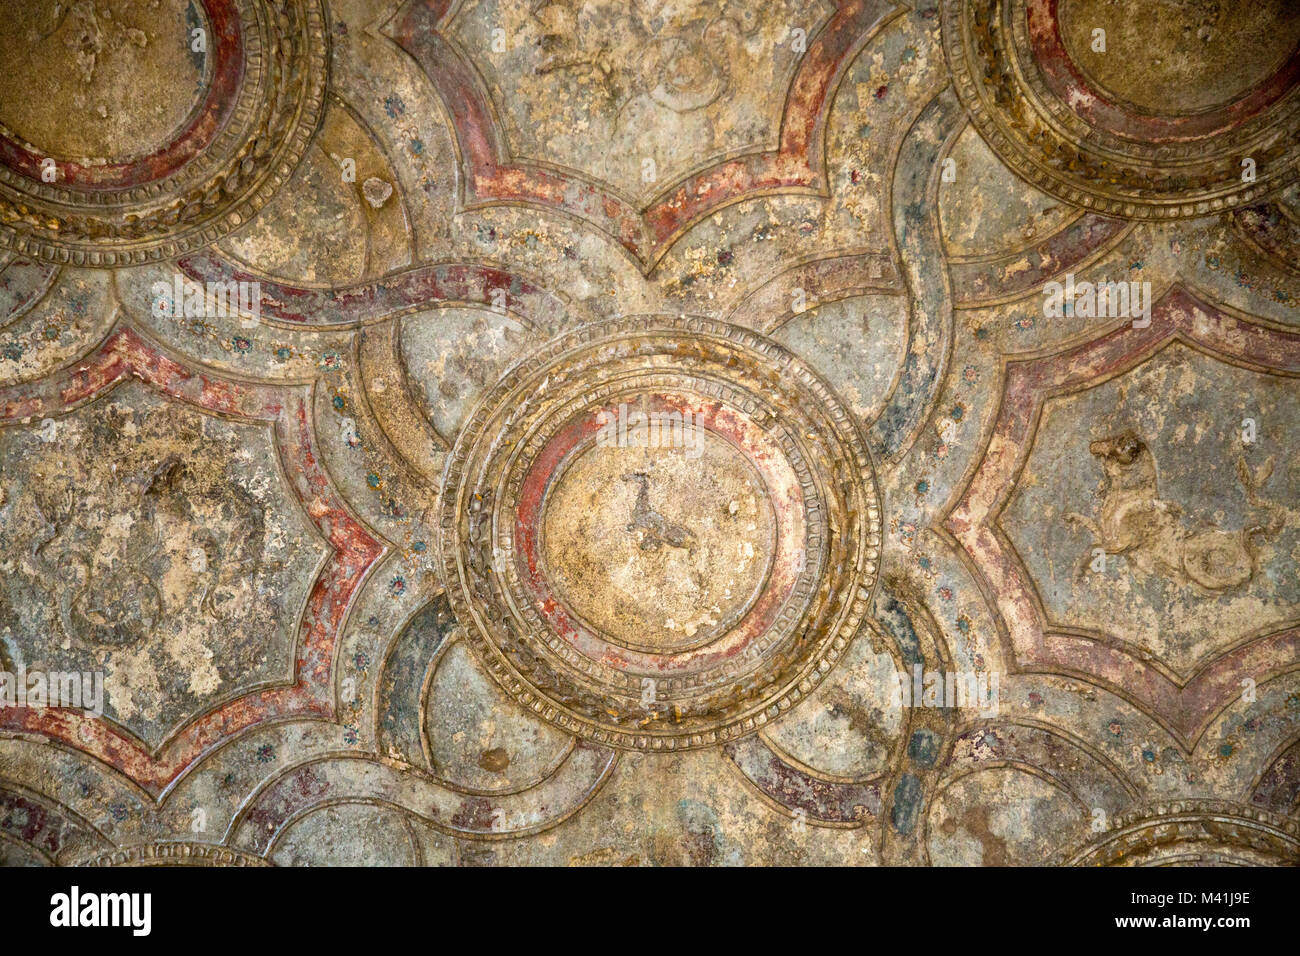 Excellent exemple de la peintures bien conservées sur le plafond de l'Stabian Baths, situé dans le quartier historique et de la célèbre cité de Pompéi, Italie. Banque D'Images